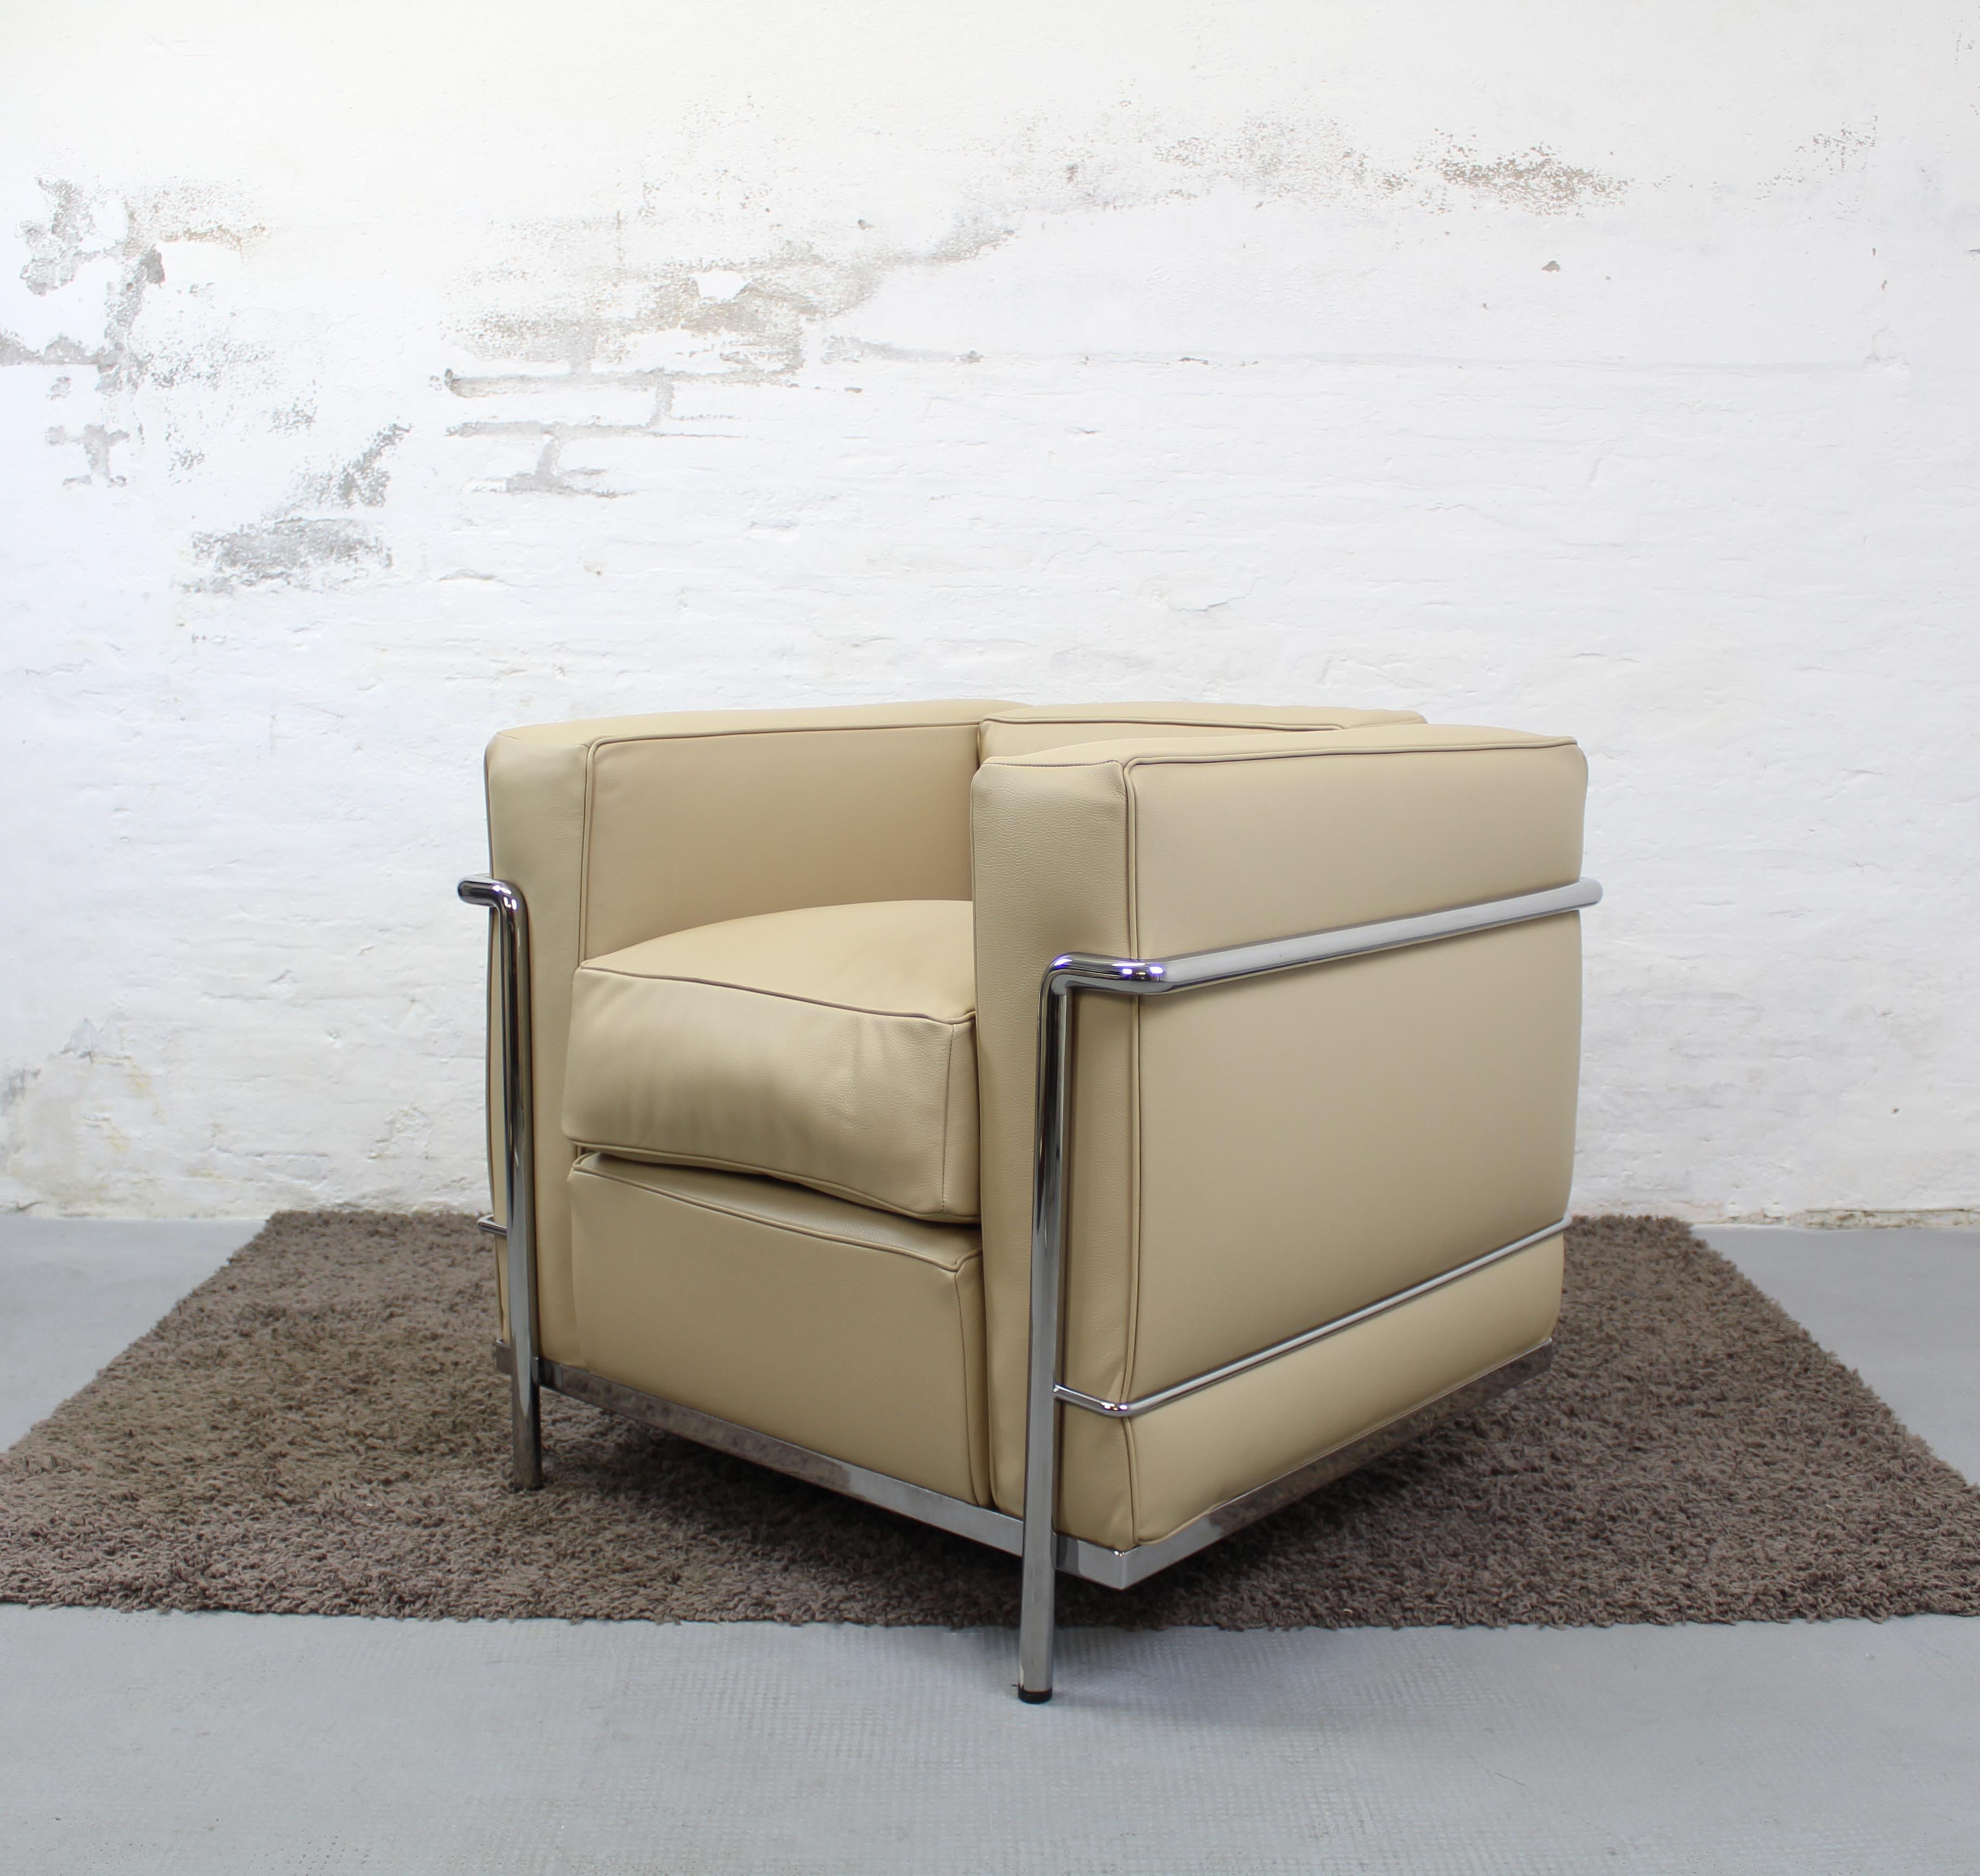 Poltrona Lc2 Le Corbusier, Cassina, Charlotte Perriand In Good Condition For Sale In Minerbio, BO